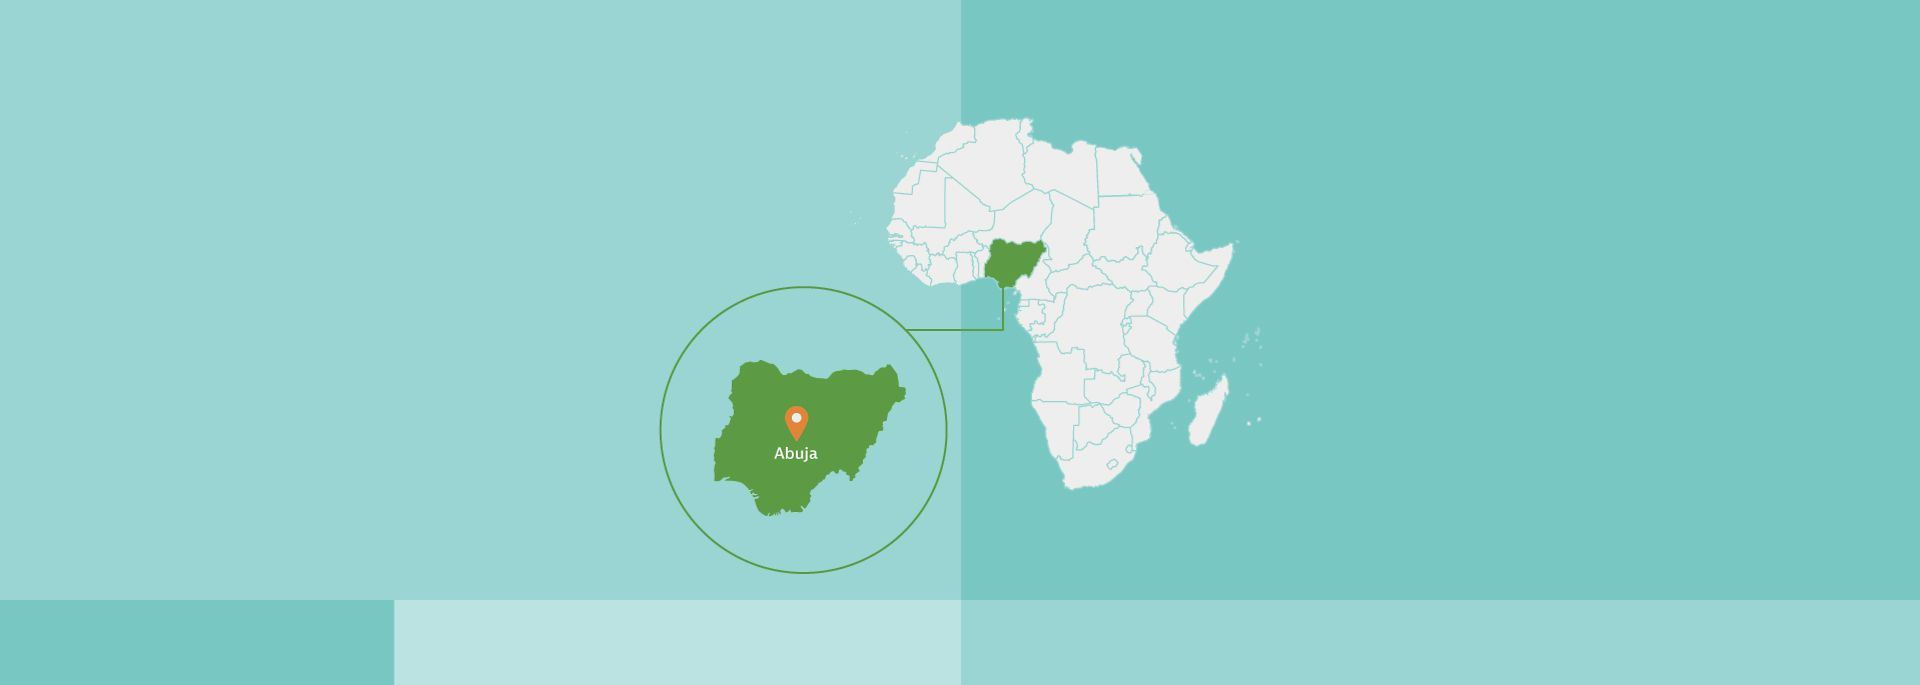 Afrikakarte, Nigeria